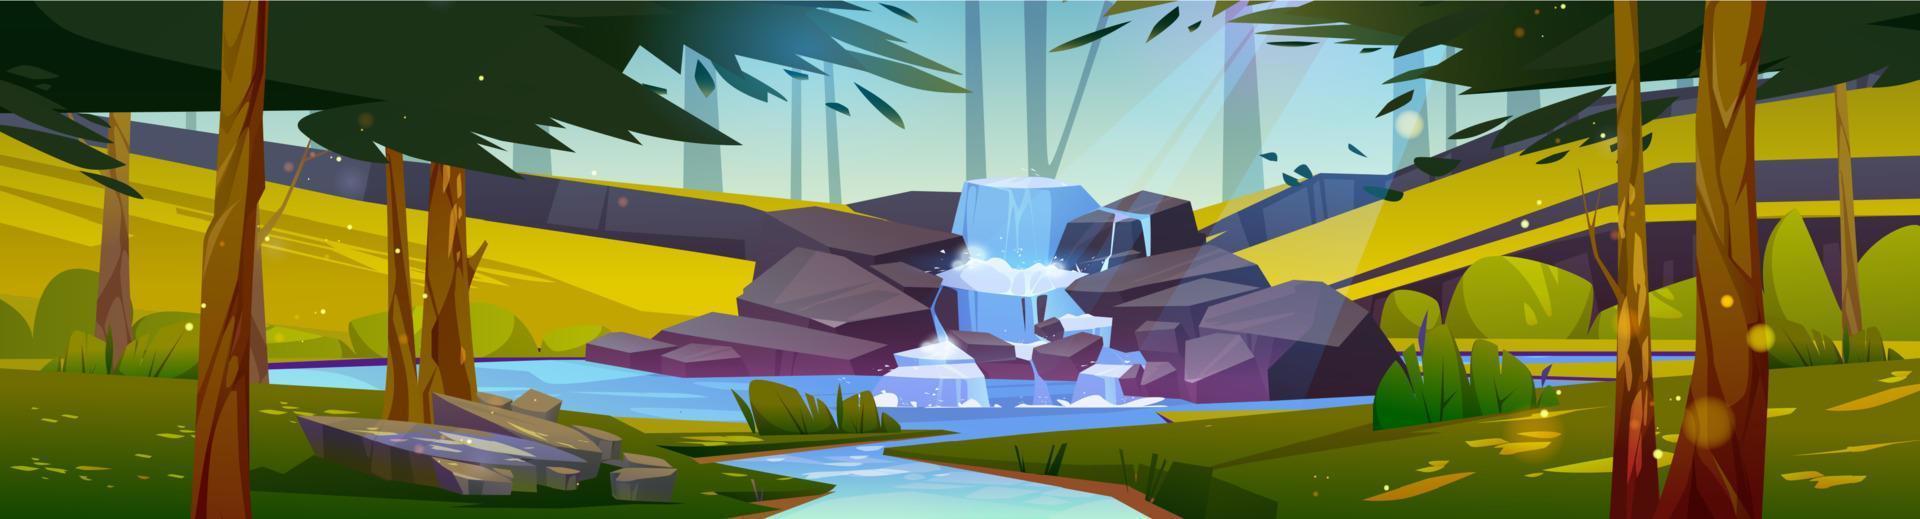 cascade dans la forêt d'été, paysage 2d de dessin animé vecteur